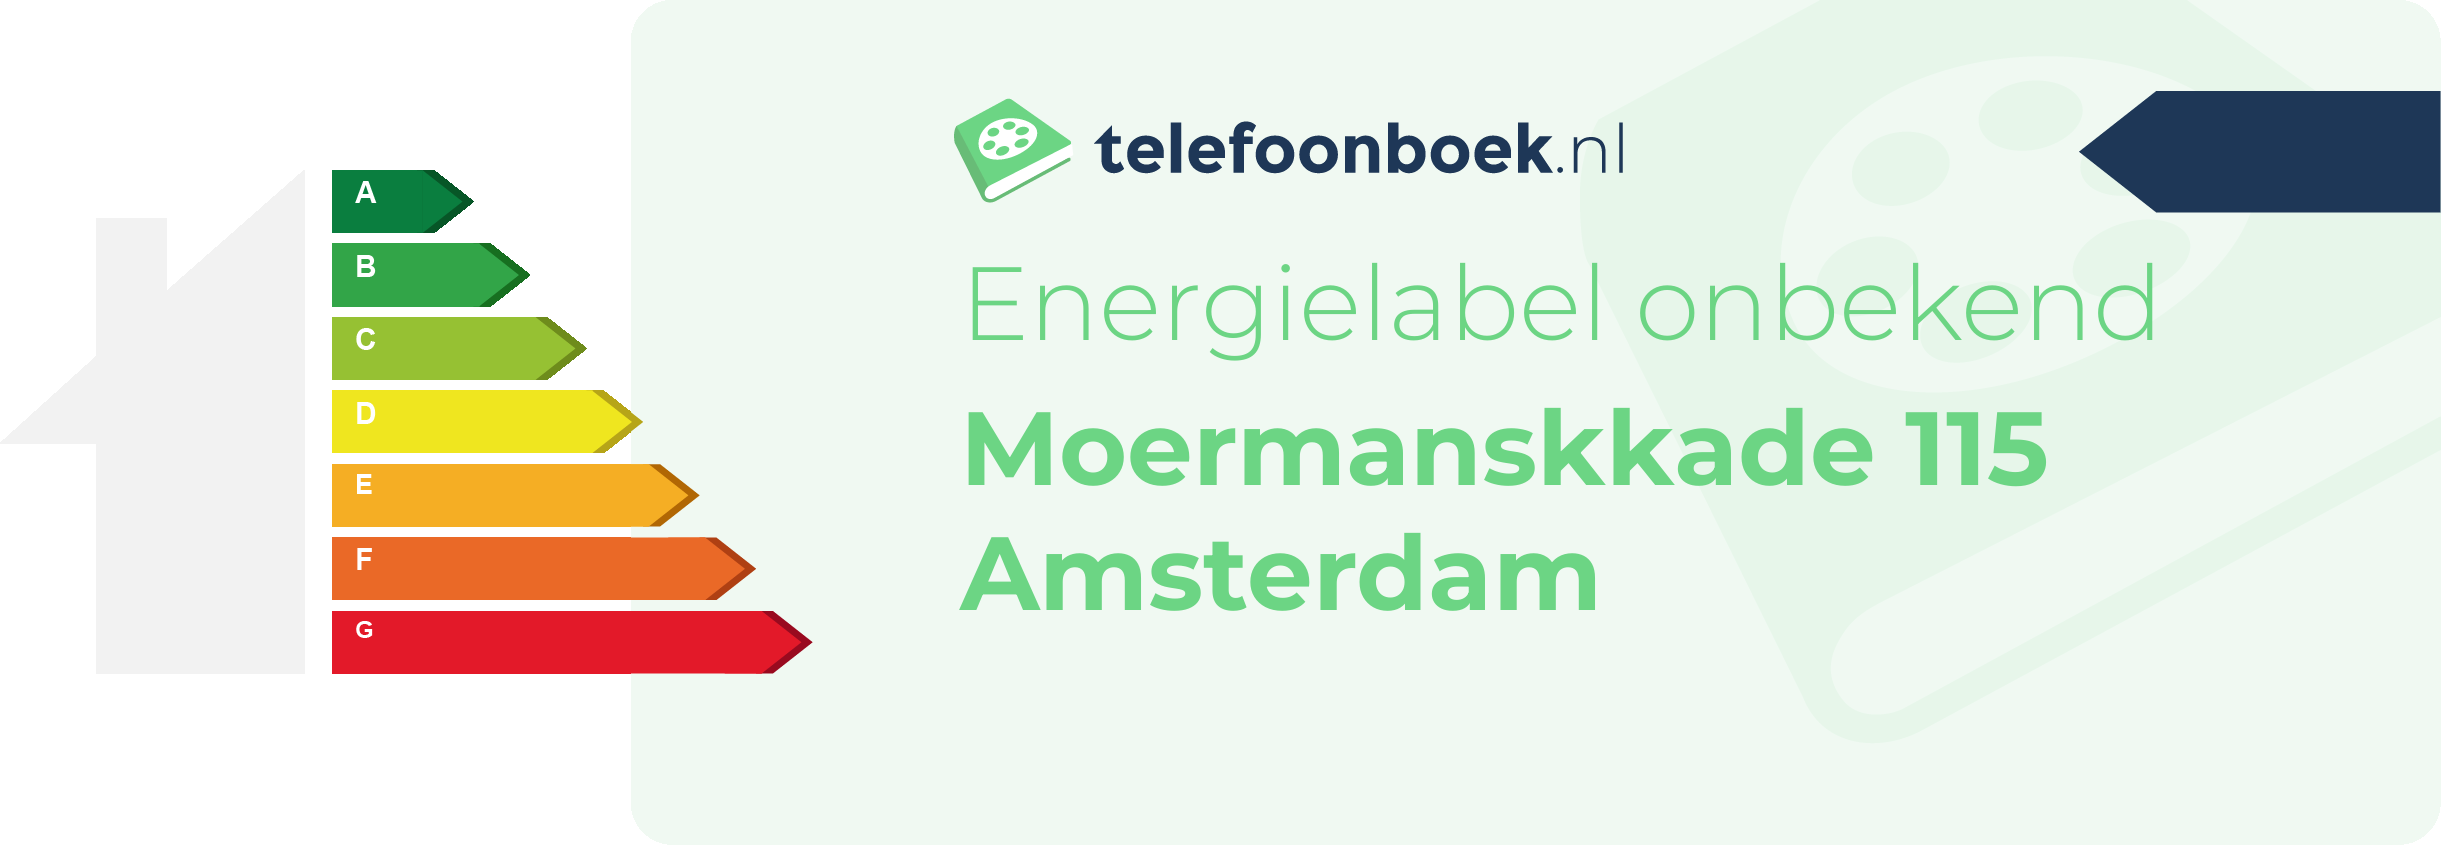 Energielabel Moermanskkade 115 Amsterdam